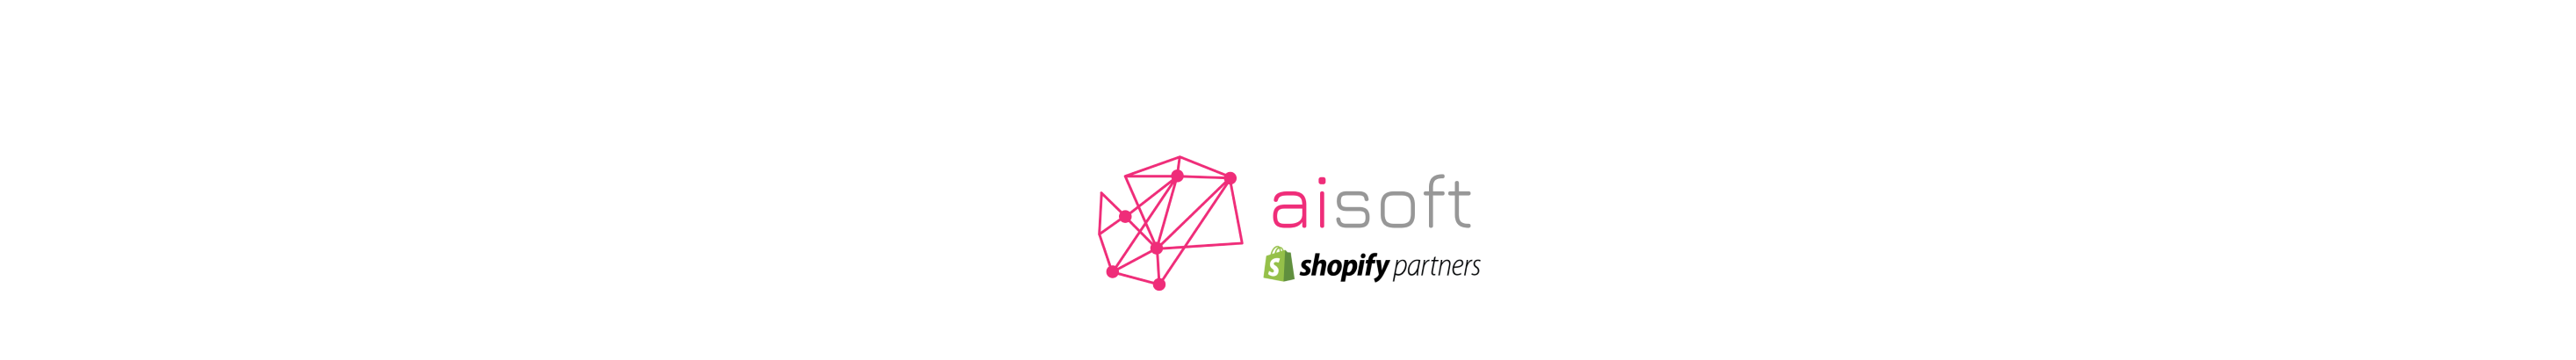 AIsoft Shopify Dev's profile banner